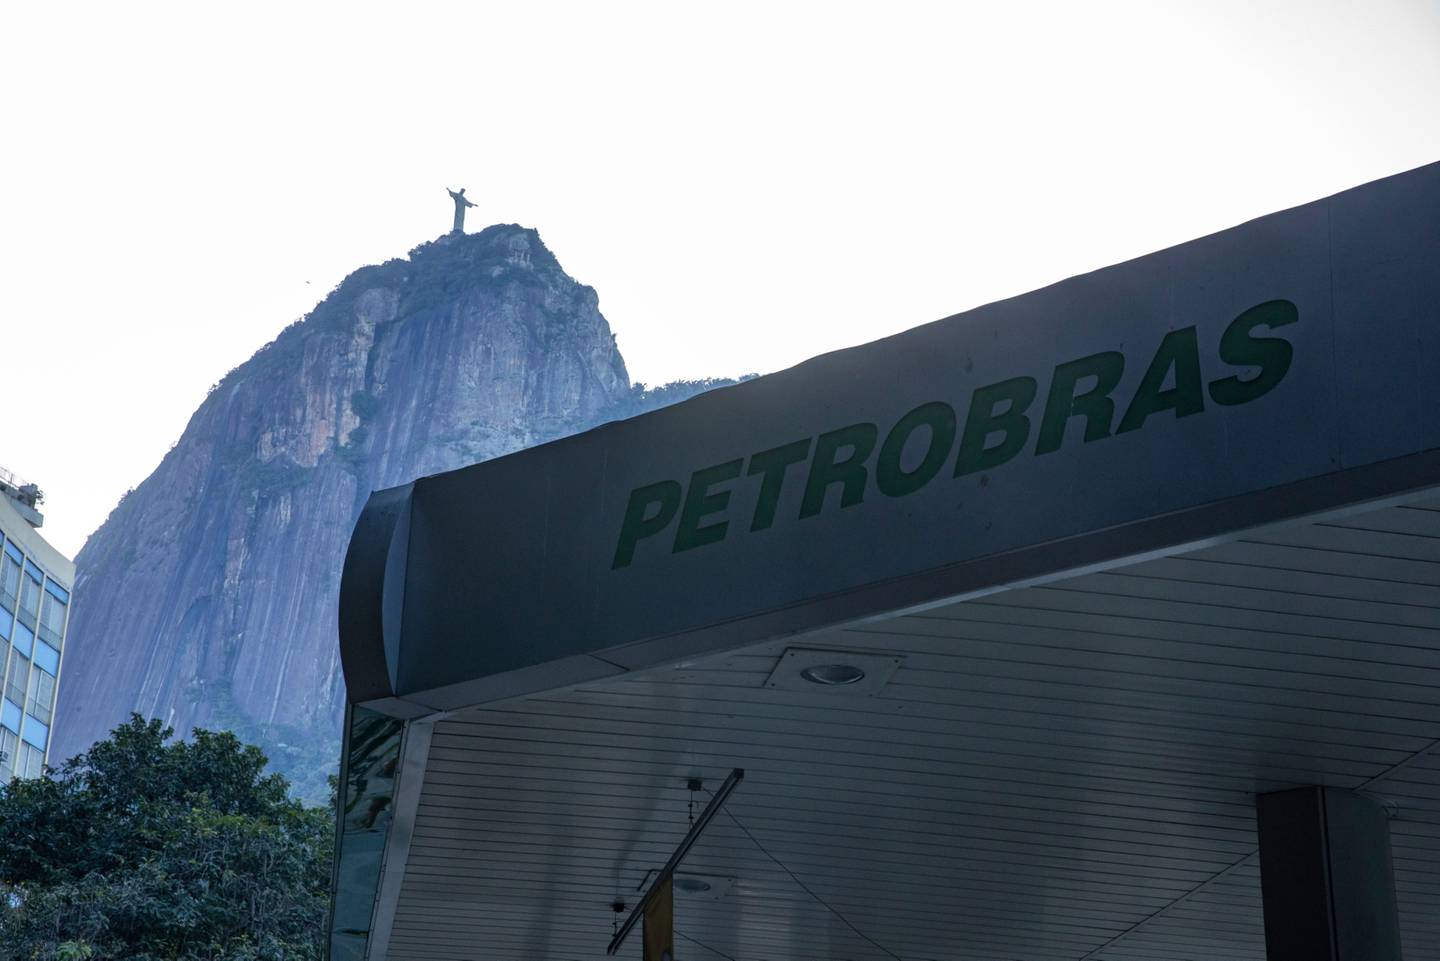 Signage outside a Petroleo Brasileiro SA (Petrobras) gas station in Rio de Janeiro.